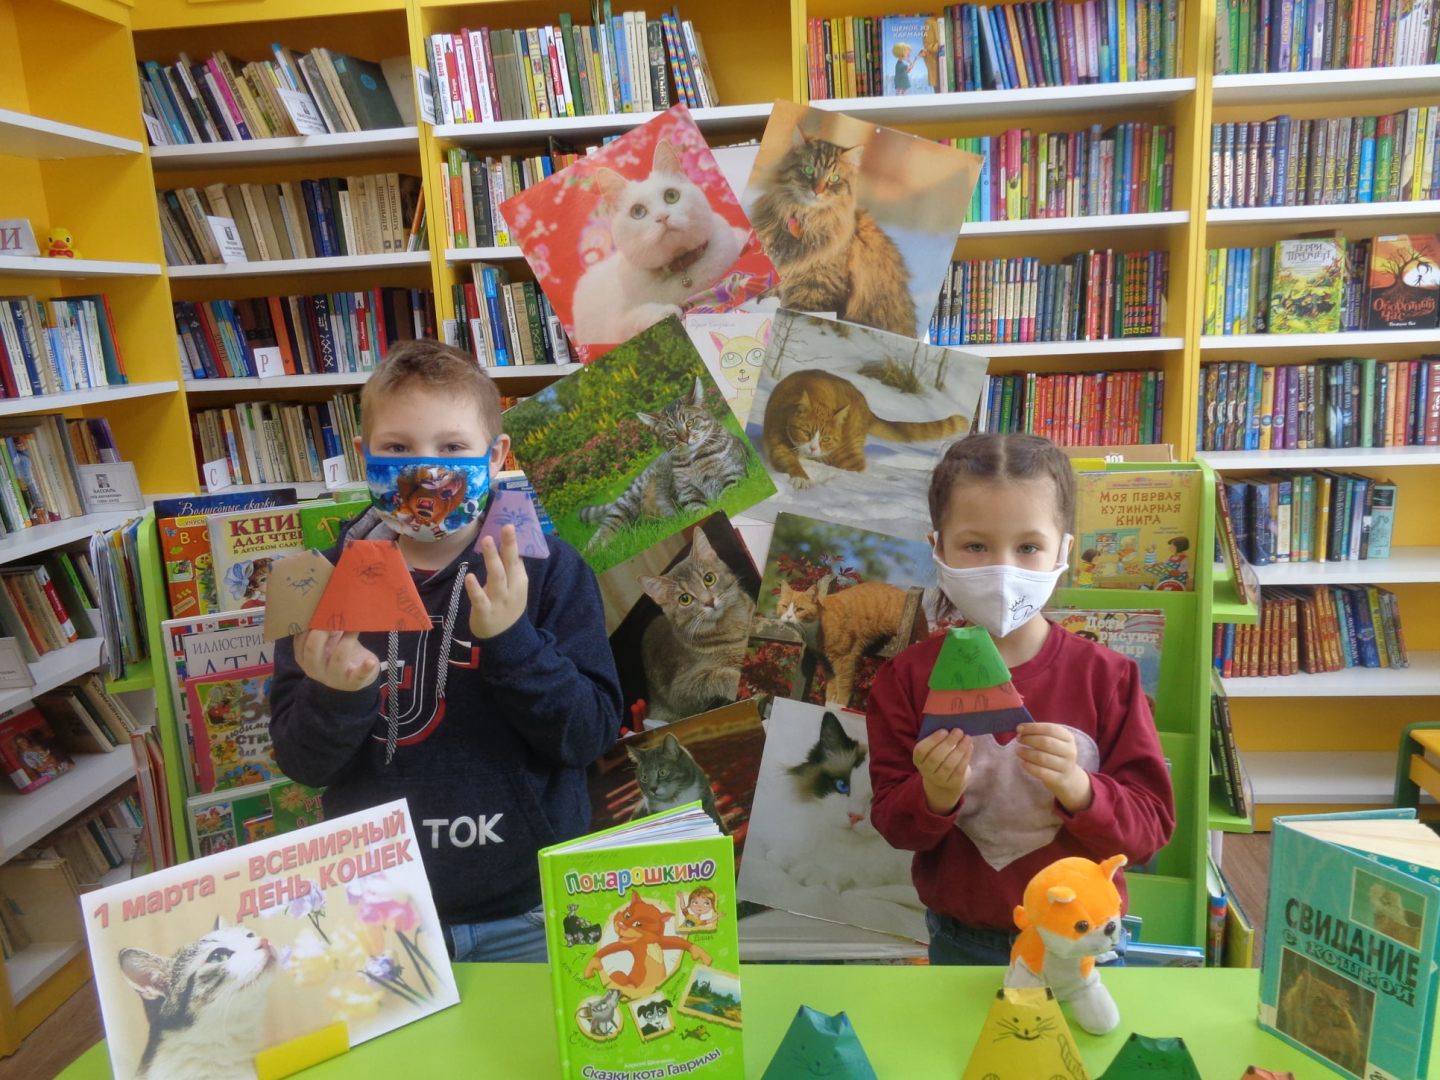 Представители Централизованной библиотечной системы городского округа Щербинка провели мероприятие для детей. Фото: официальная страница ЦБС Щербинки в социальных сетях